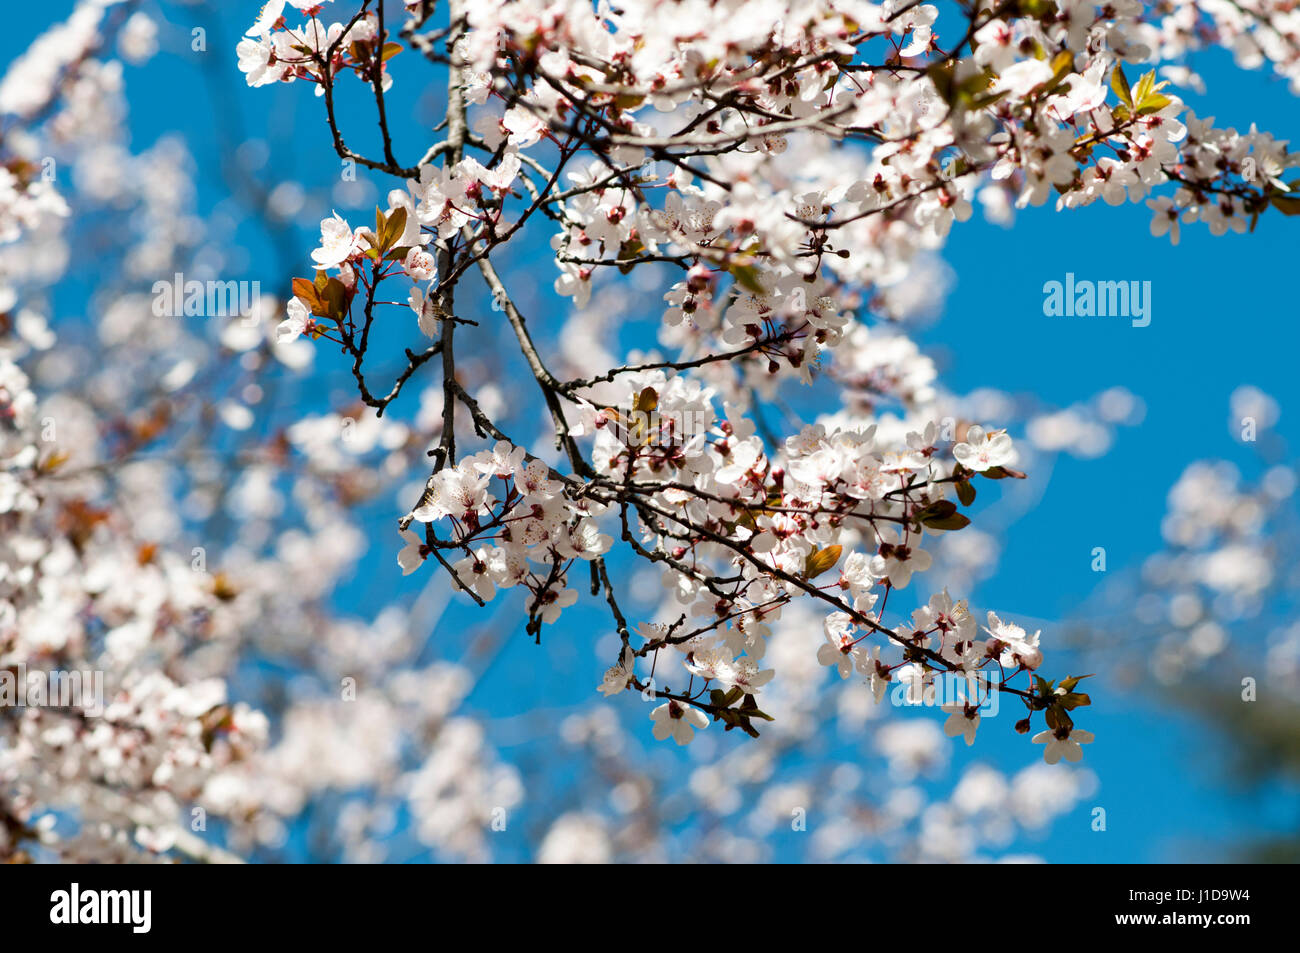 Blooming almendro sobre un fondo de cielo azul. Fotografiado en el Parque del Oeste, Madrid, España Foto de stock